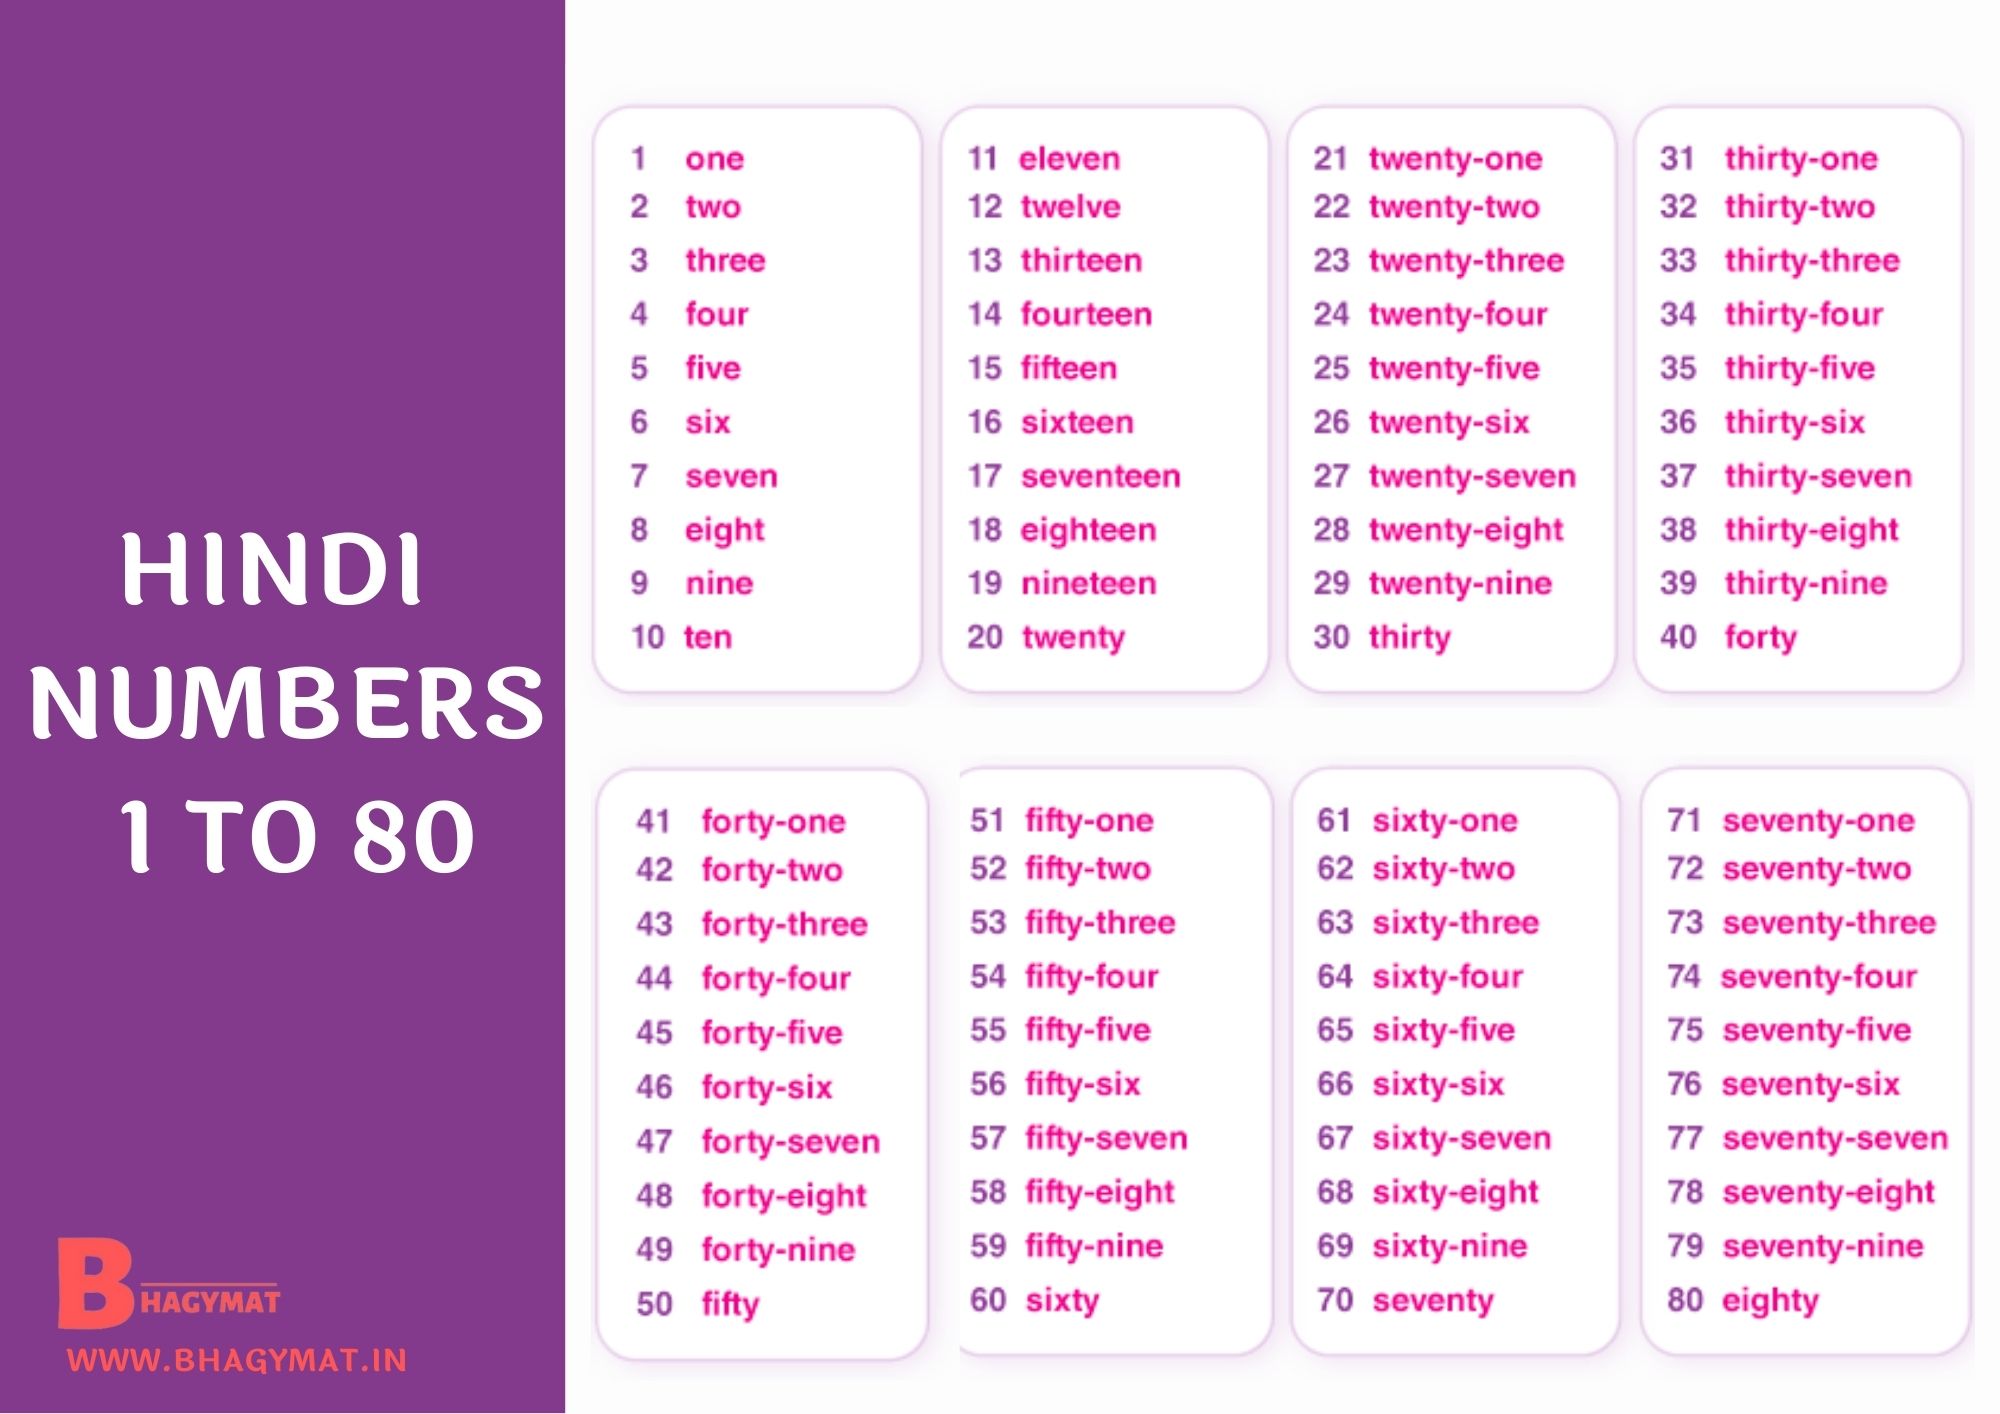 Hindi Numbers 1 To 80 | 1 To 80 Numbers In Hindi | Hindi Numbers 1-80 | Numbers Hindi 1 To 80 | 1 To 80 Hindi Numbers